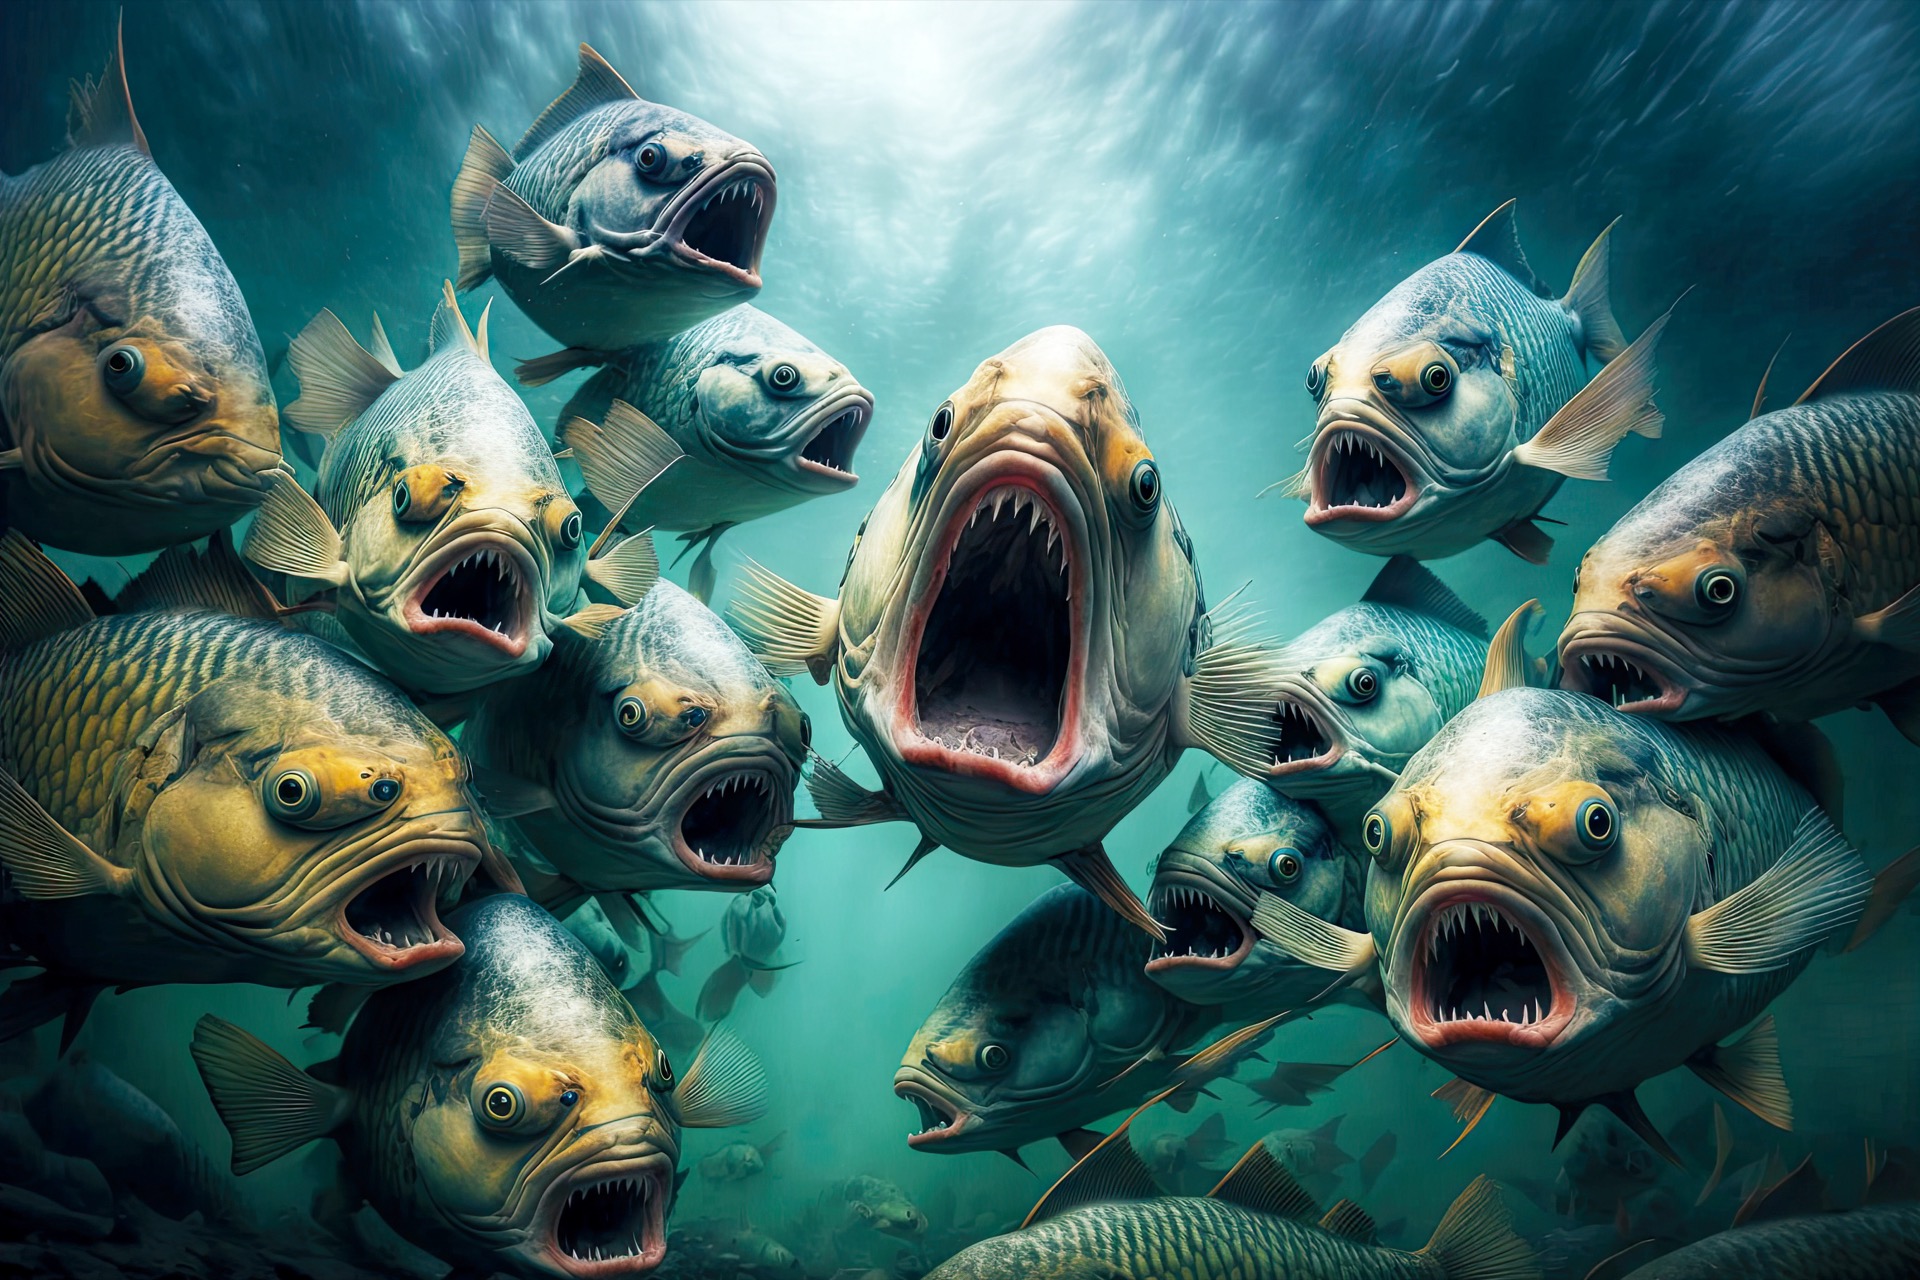 Les piranhas ont réputation bien sombre, mais sont-ils des mangeurs d'Hommes comme le dit la légende ? © Alfazet Chronicles, Adobe Stock